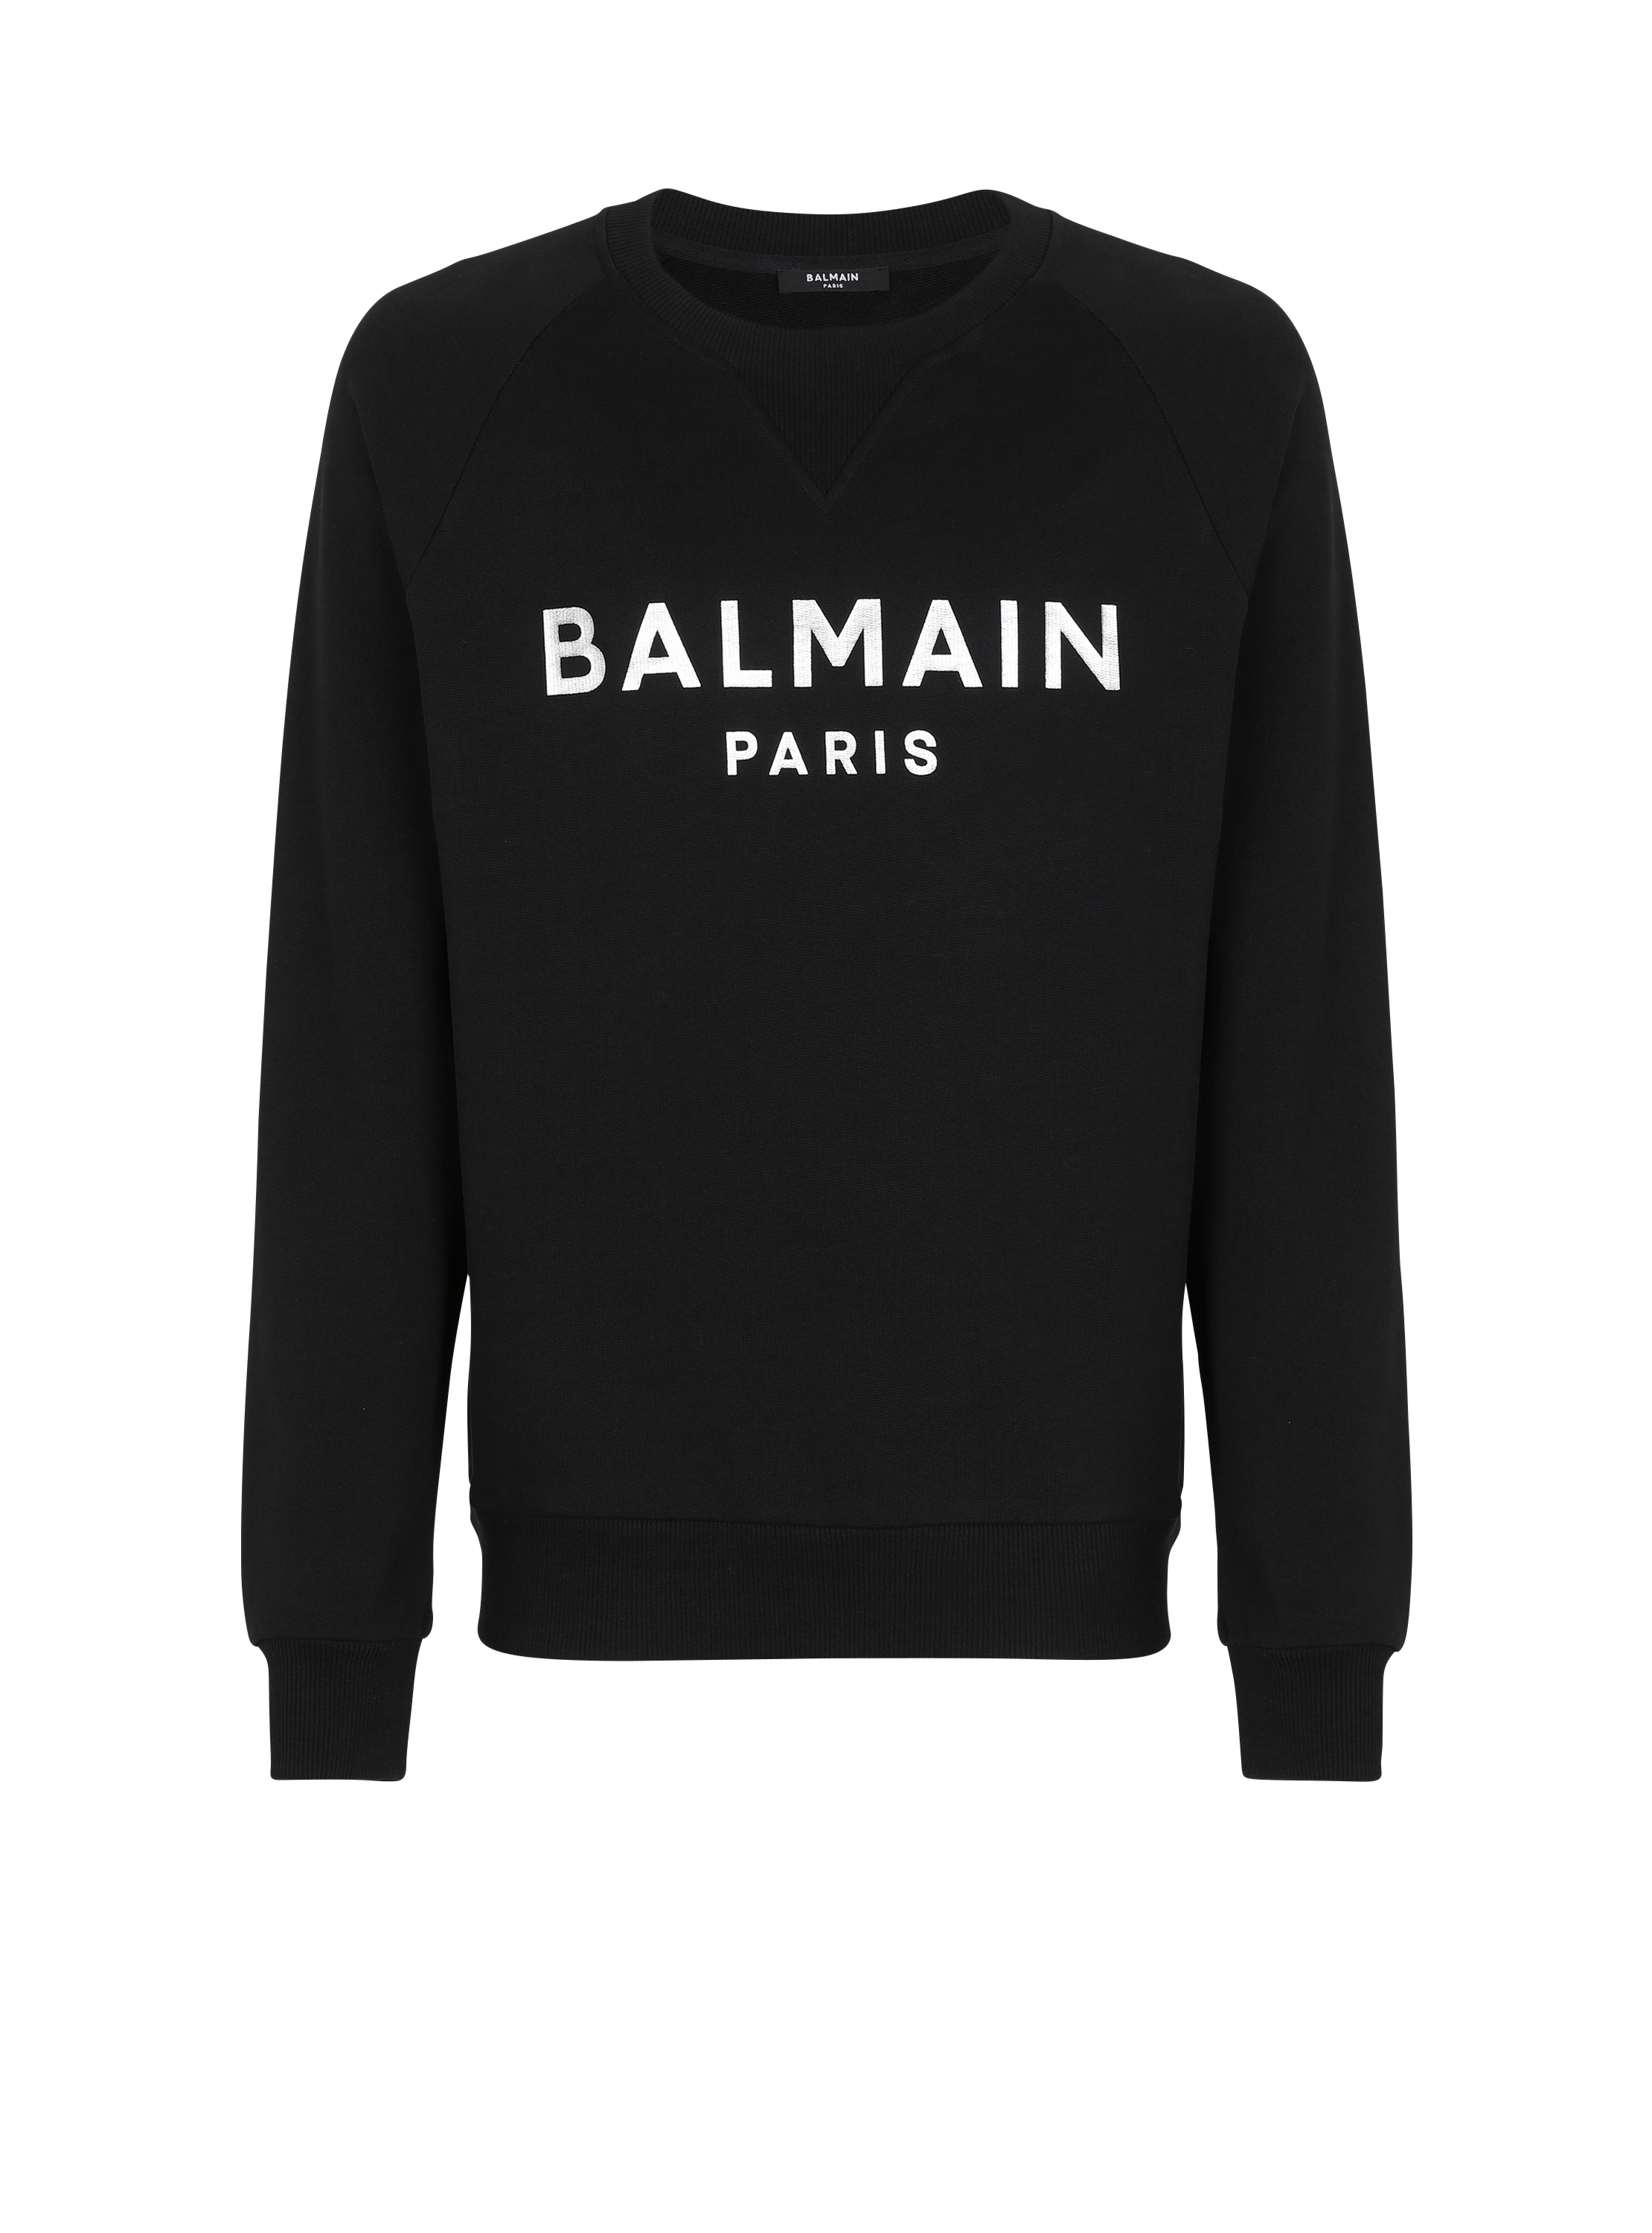 Sweatshirt aus Öko-Baumwolle mit aufgedrucktem Balmain Metallic-Logo, schwarz, hi-res